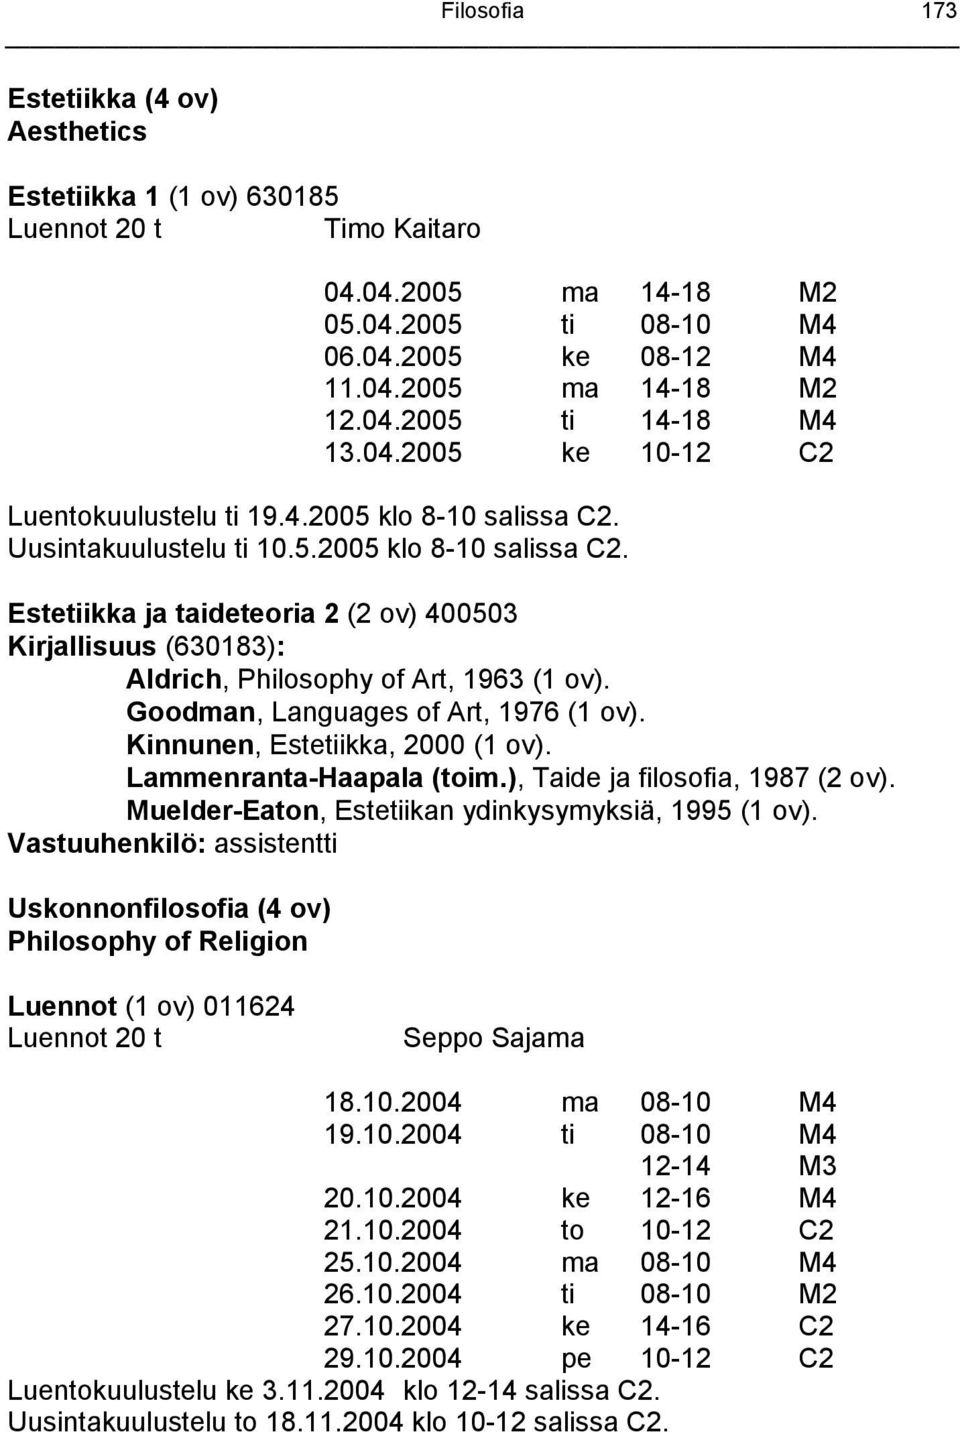 Goodman, Languages of Art, 1976 (1 ov). Kinnunen, Estetiikka, 2000 (1 ov). Lammenranta-Haapala (toim.), Taide ja filosofia, 1987 (2 ov). Muelder-Eaton, Estetiikan ydinkysymyksiä, 1995 (1 ov).